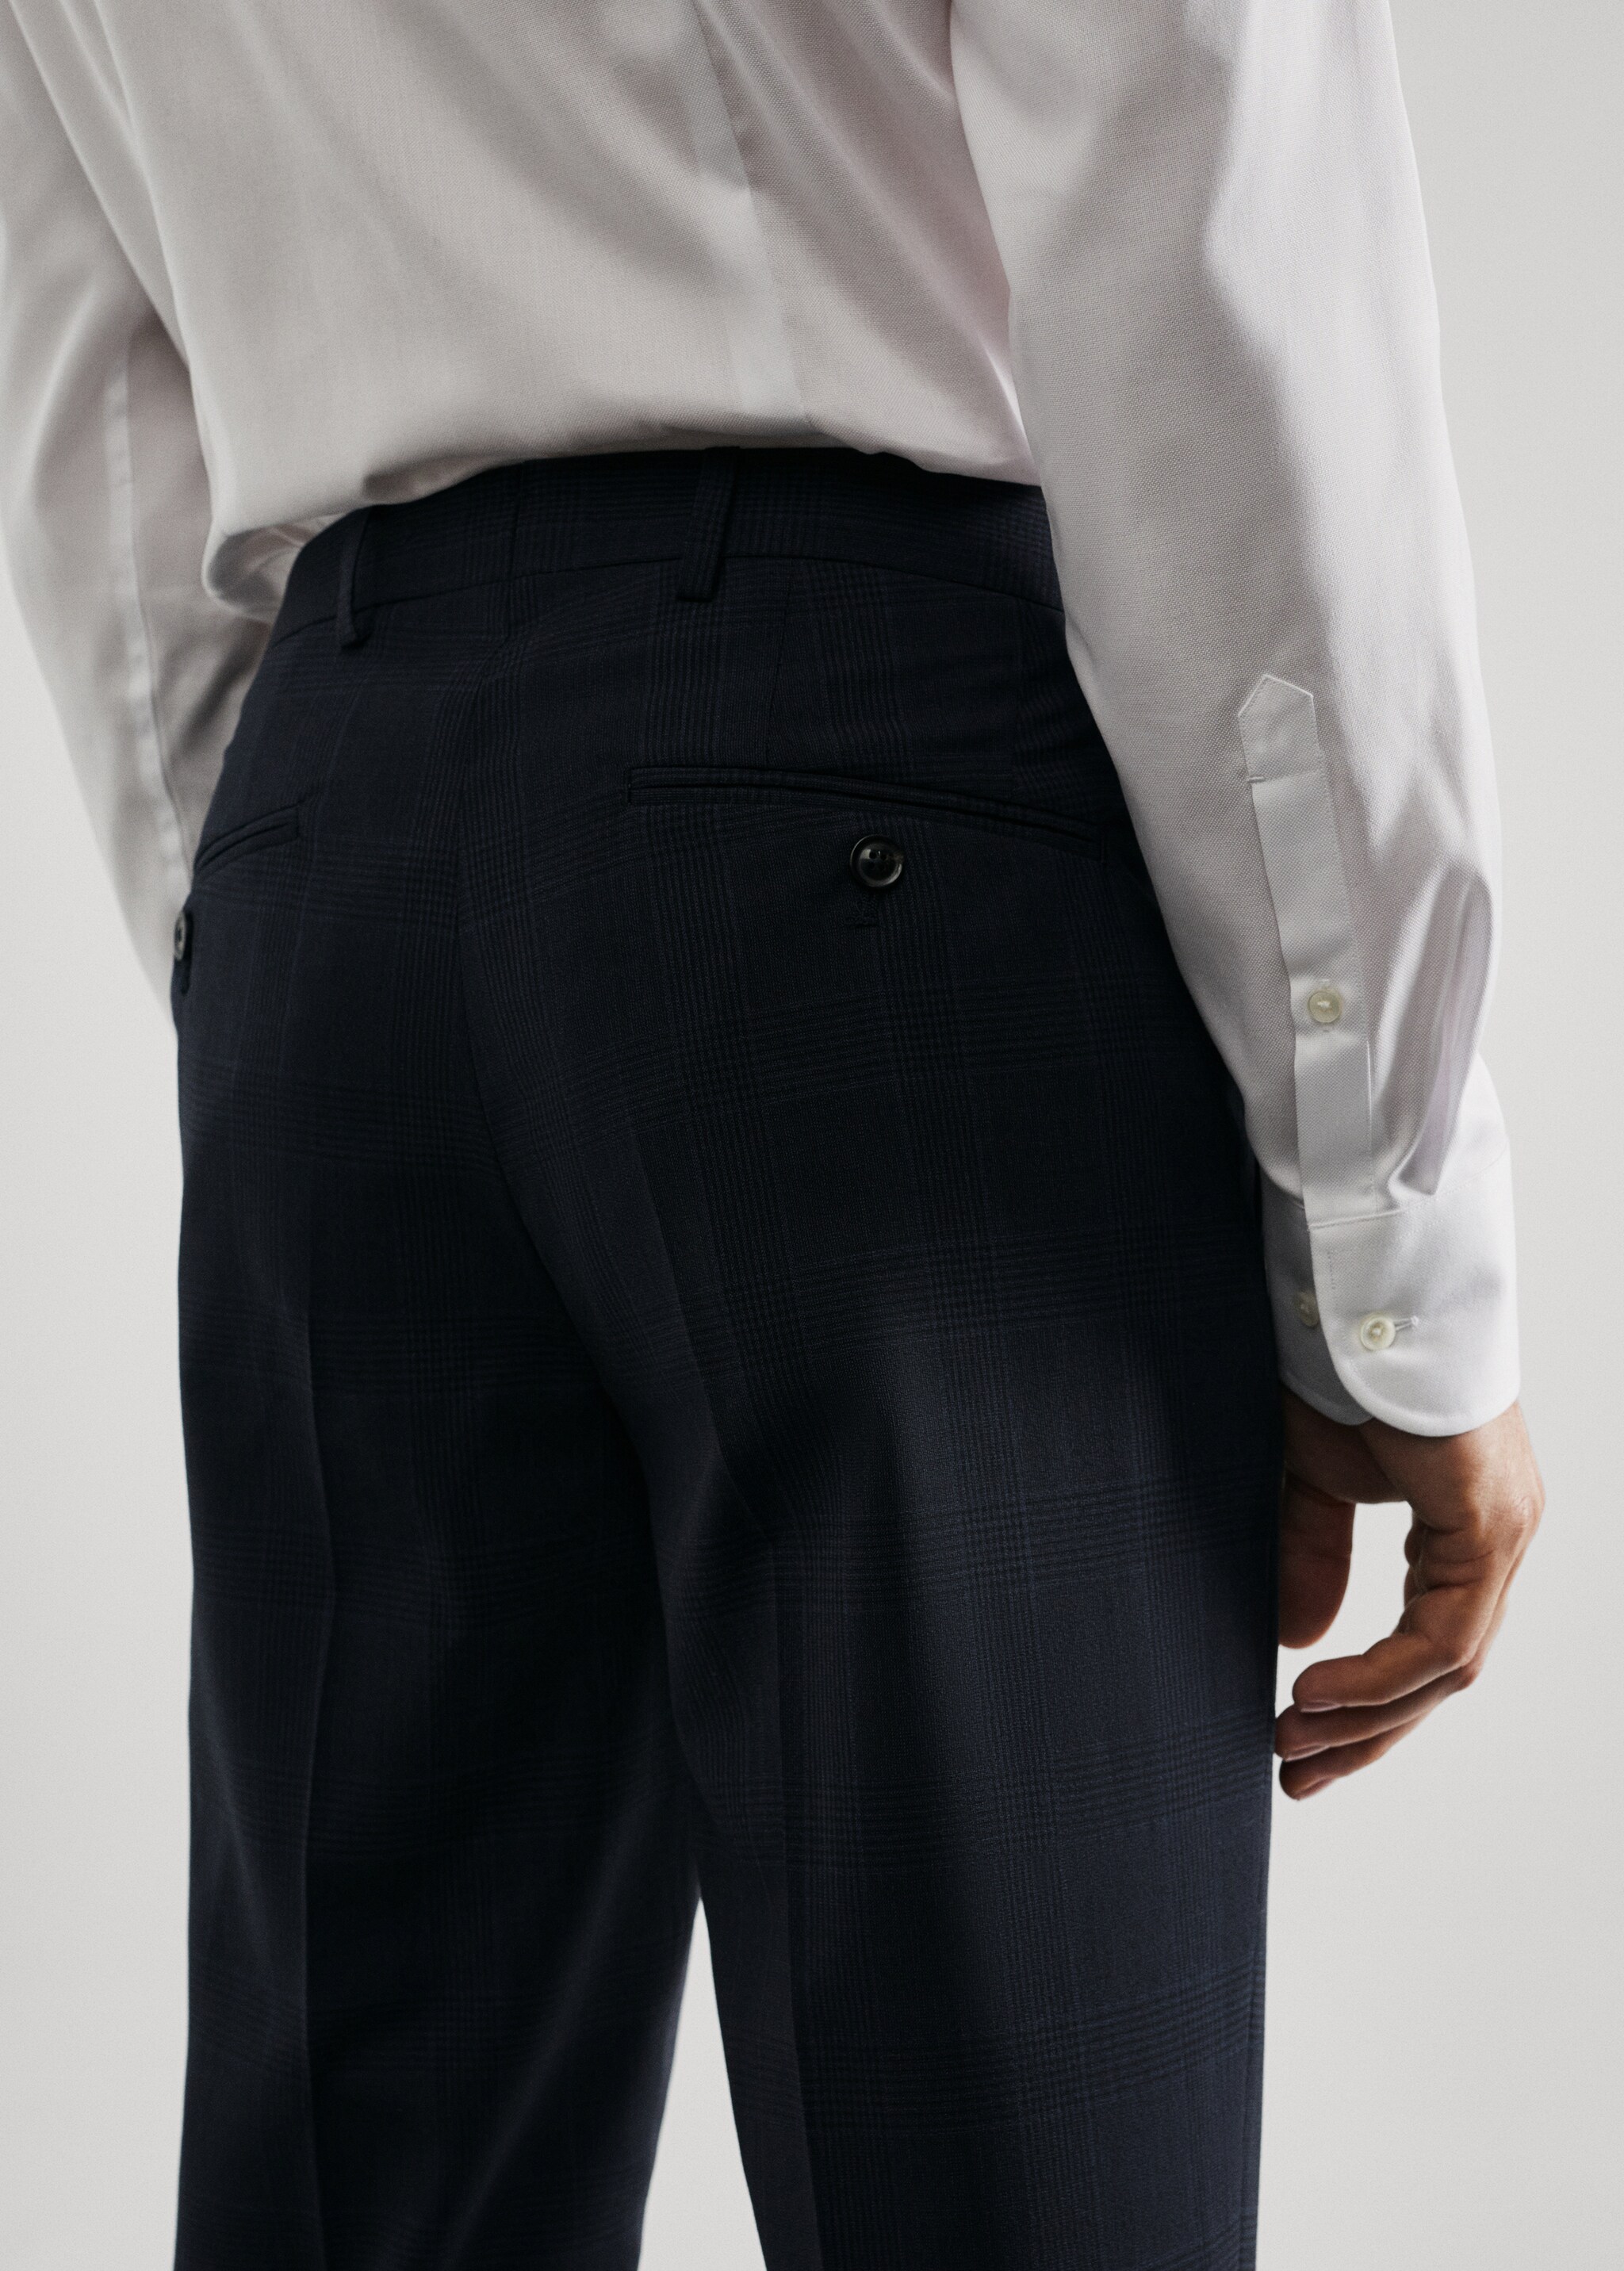 Pantalons vestir slim fit llana verge - Detall de l'article 2